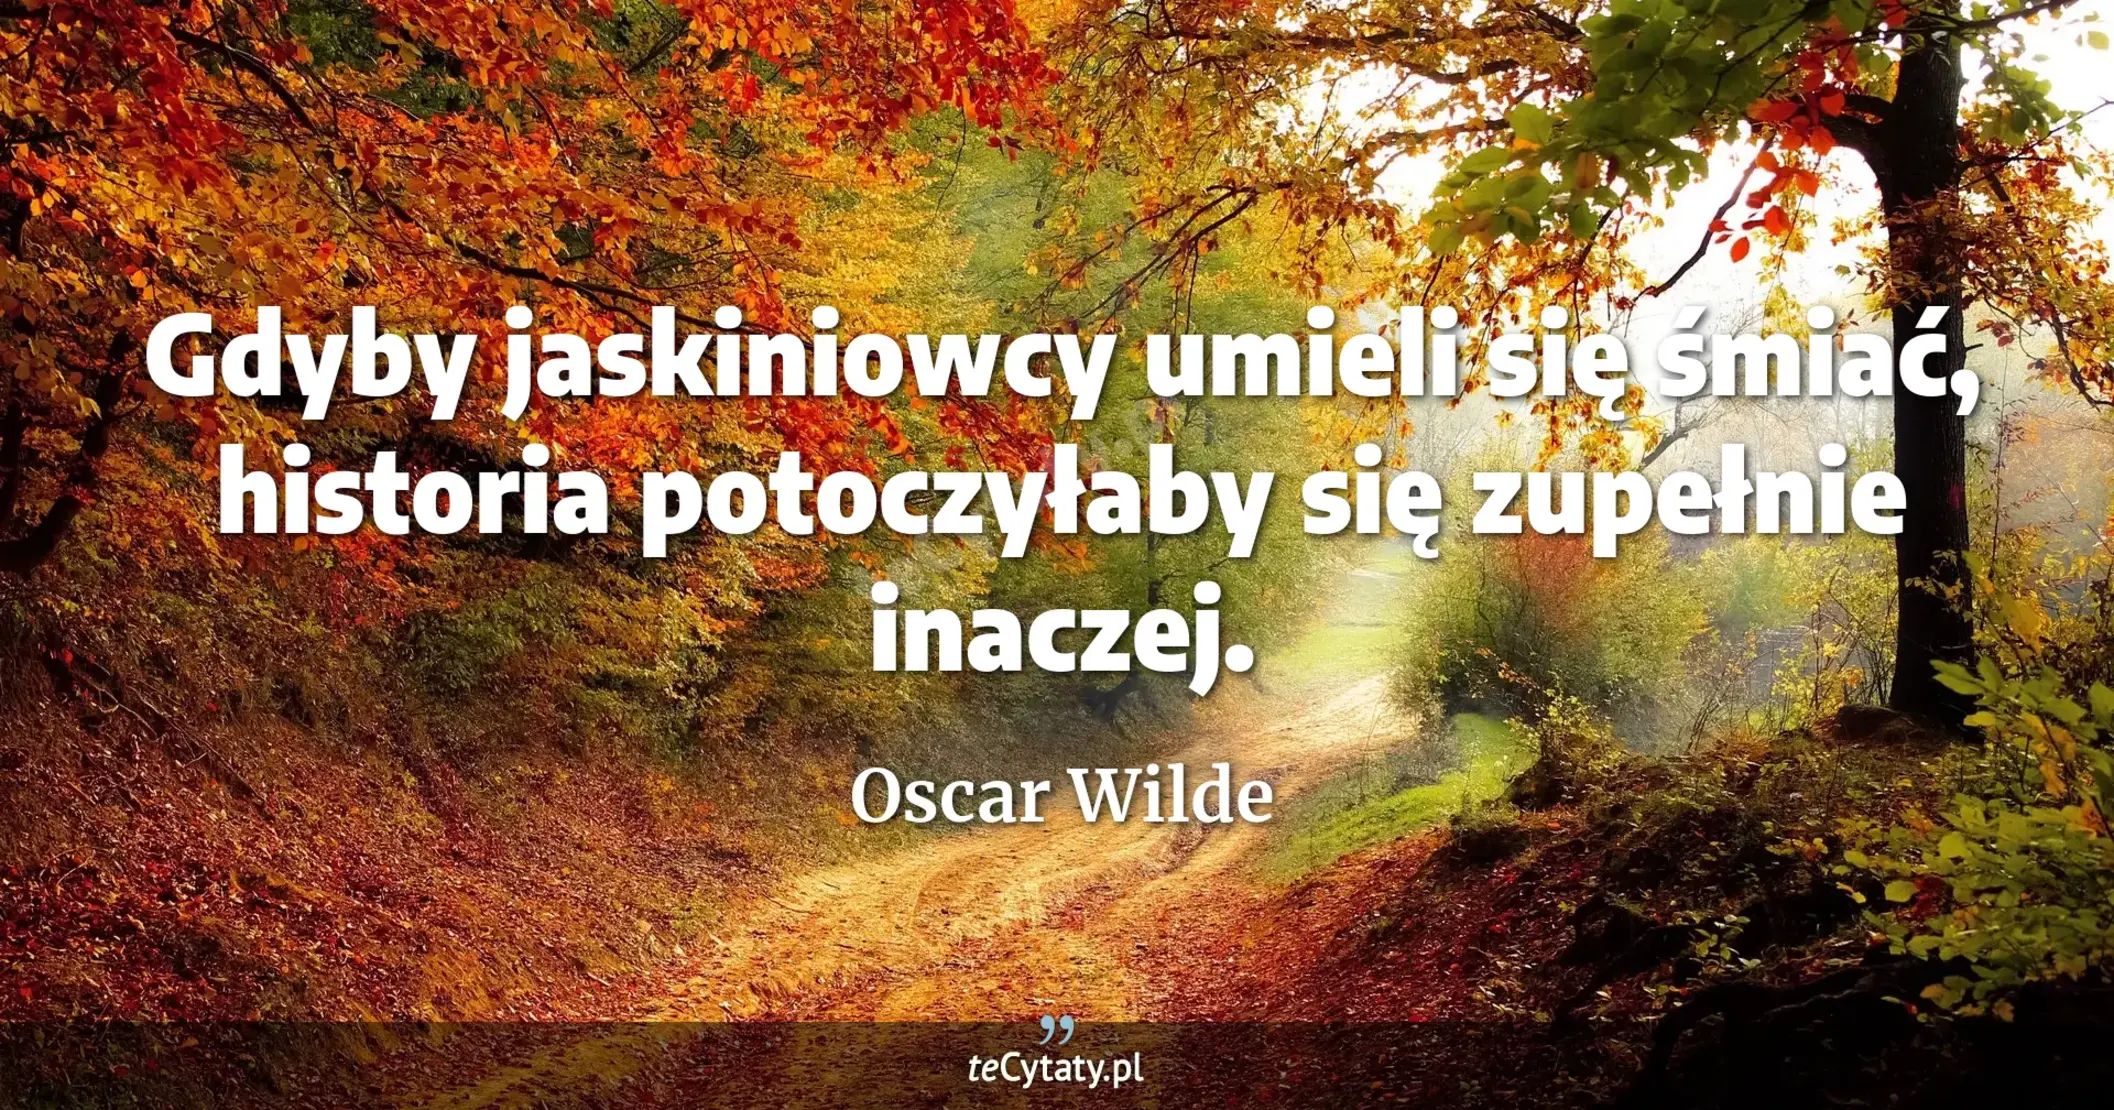 Gdyby jaskiniowcy umieli się śmiać, historia potoczyłaby się zupełnie inaczej. - Oscar Wilde